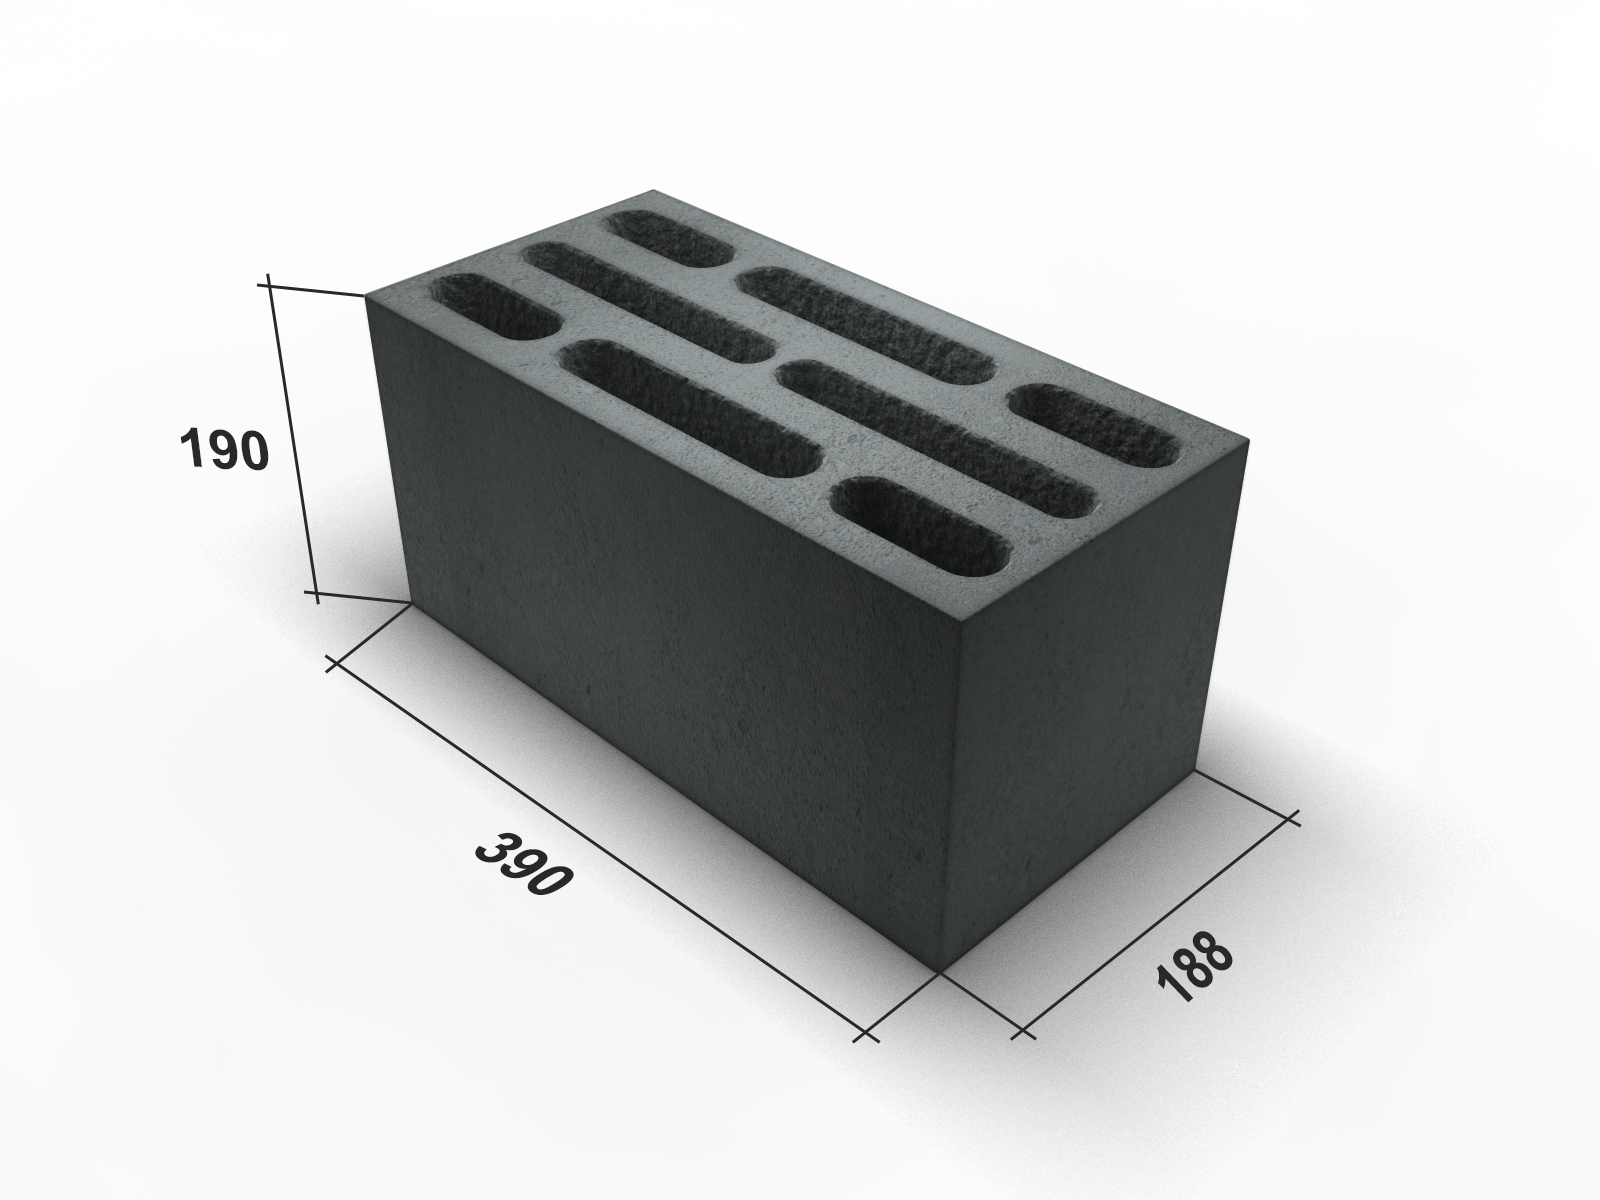 Размеры керамзитобетонных блоков для несущих стен и перегородок